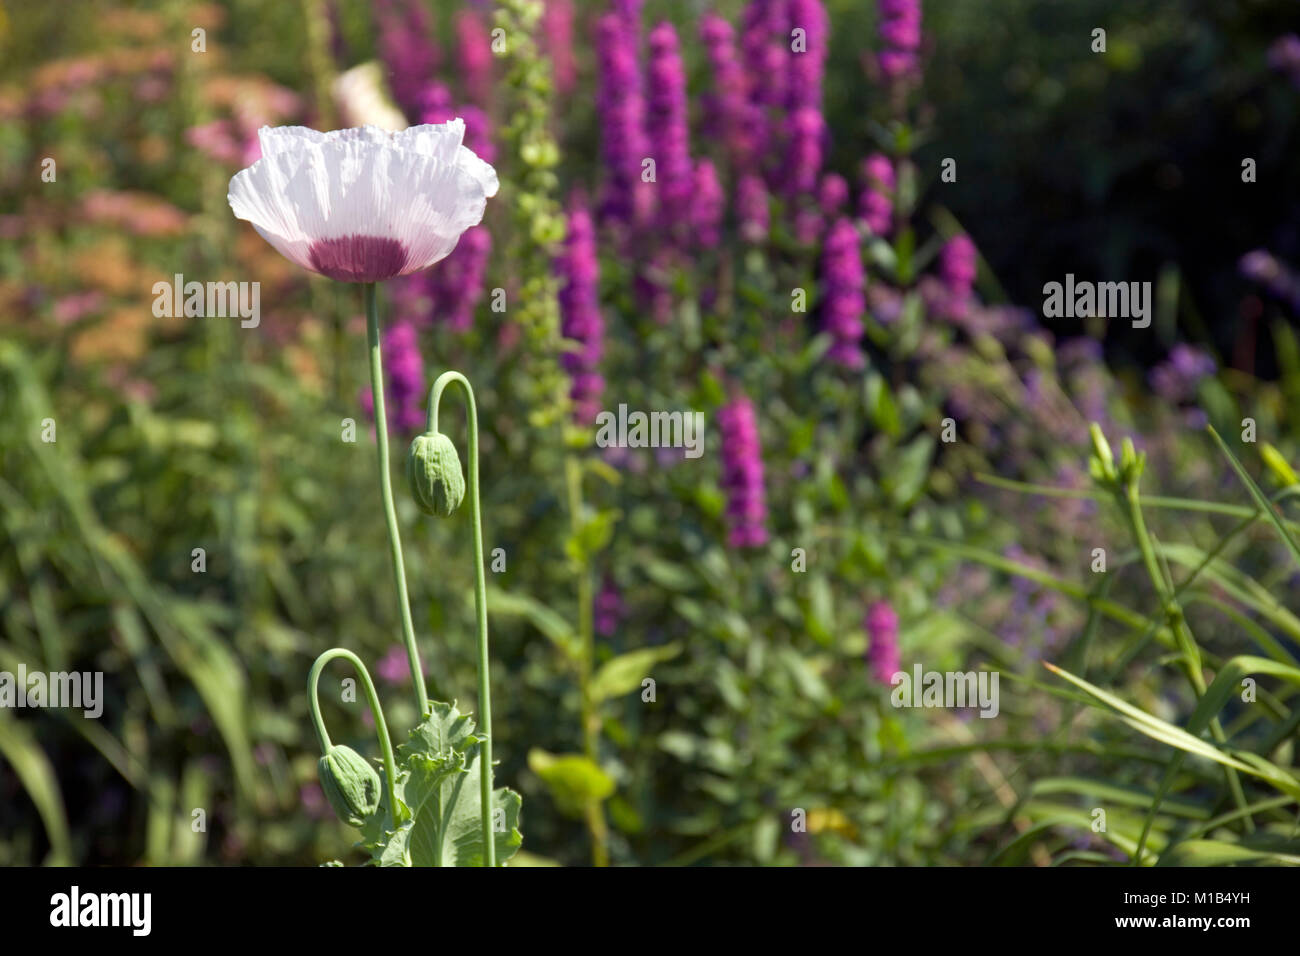 A single mauve poppy flower in a garden border Stock Photo